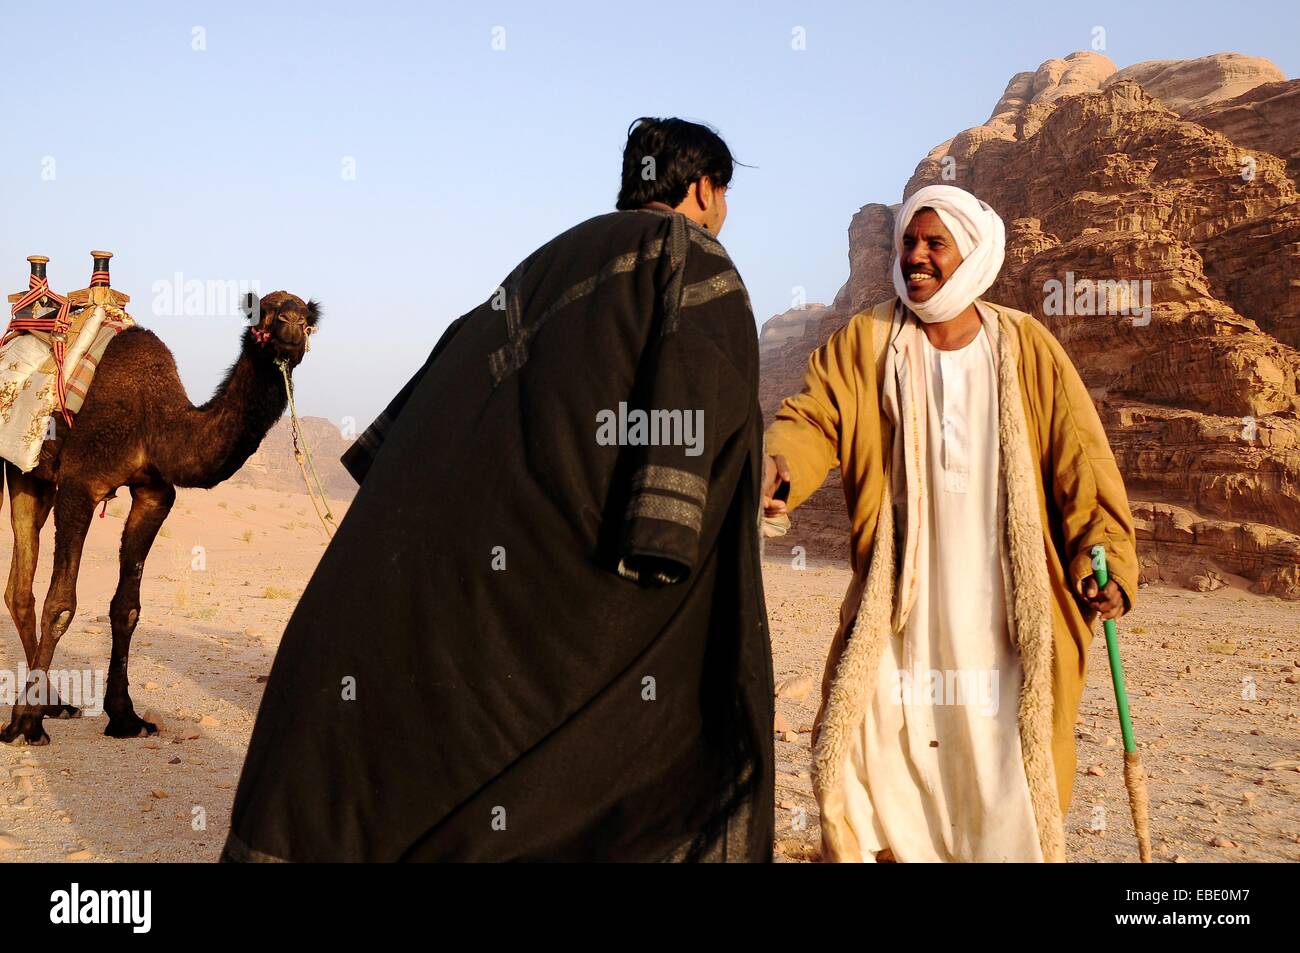 Gå glip af evne meditation Beduin men with their camels Wadi Rum desert Jordan Middle East Stock Photo  - Alamy